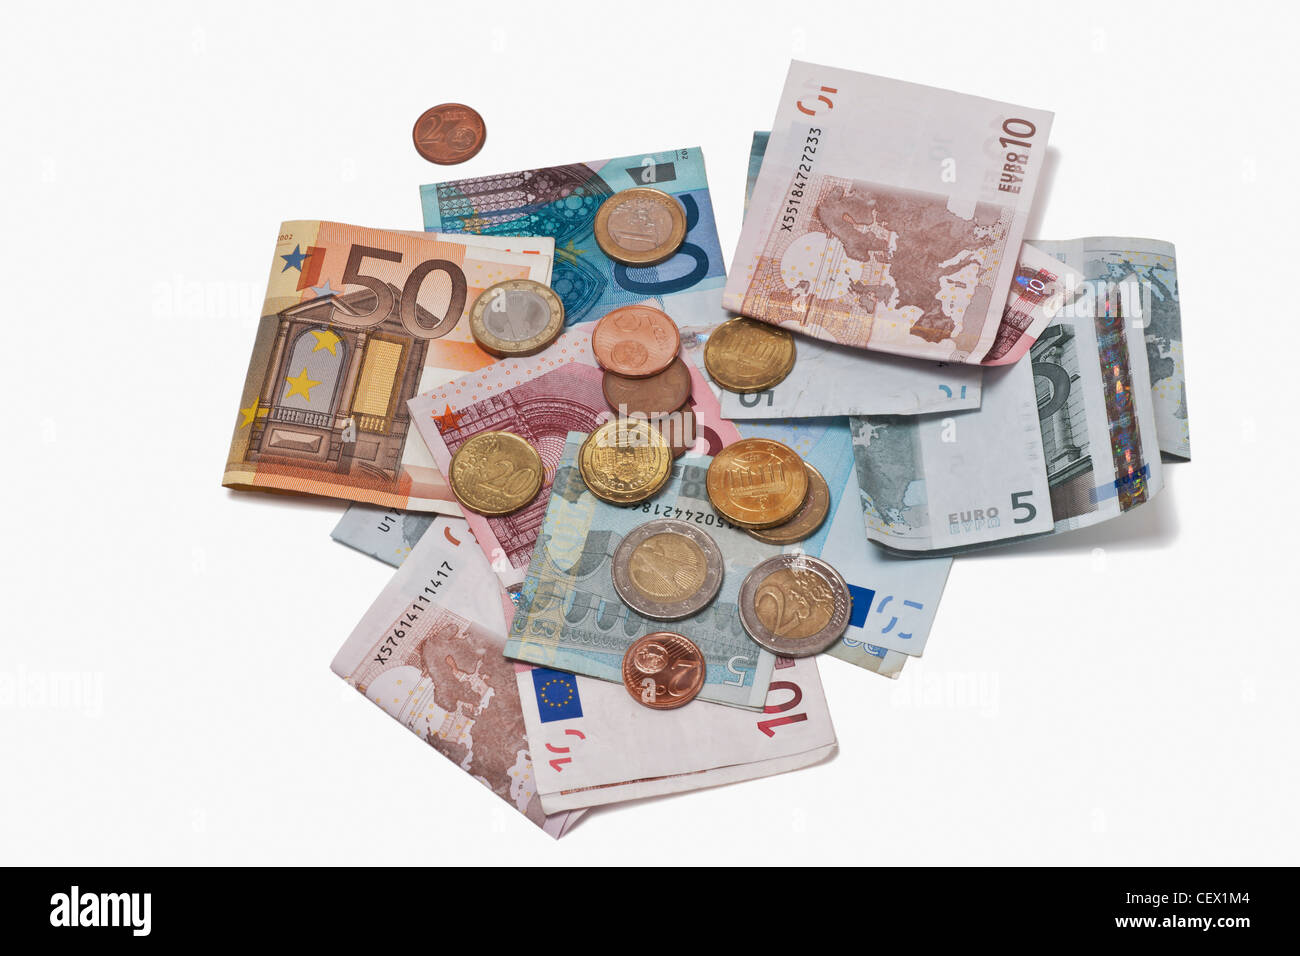 De nombreux projets de l'euro et les pièces en euros se trouvant côte à côte. Le 01 janvier 2002, l'euro a été introduit comme argent comptant. Banque D'Images